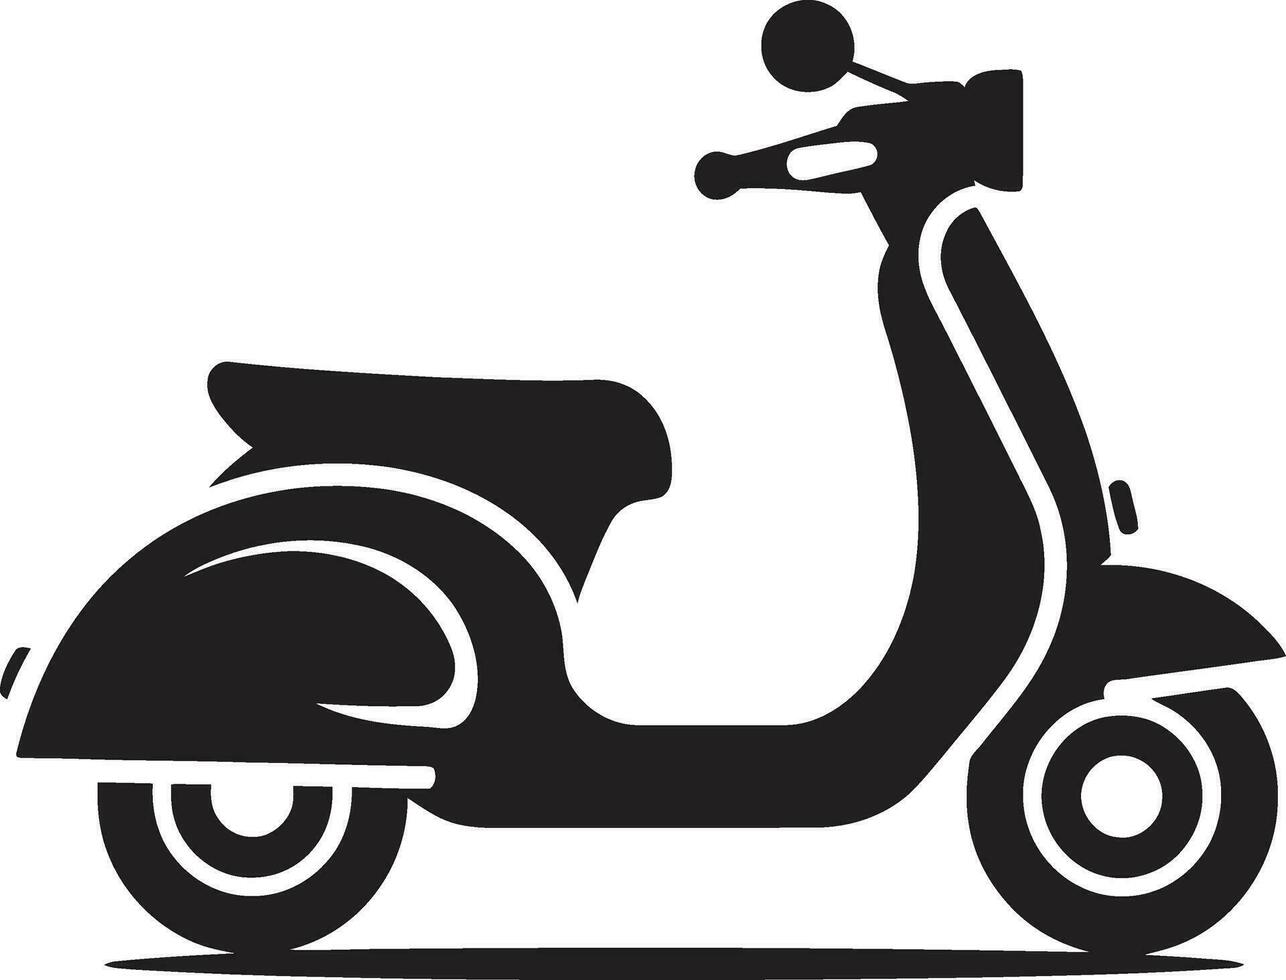 scooter noleggio servizio sito web design scooter avventura turista guida vettore